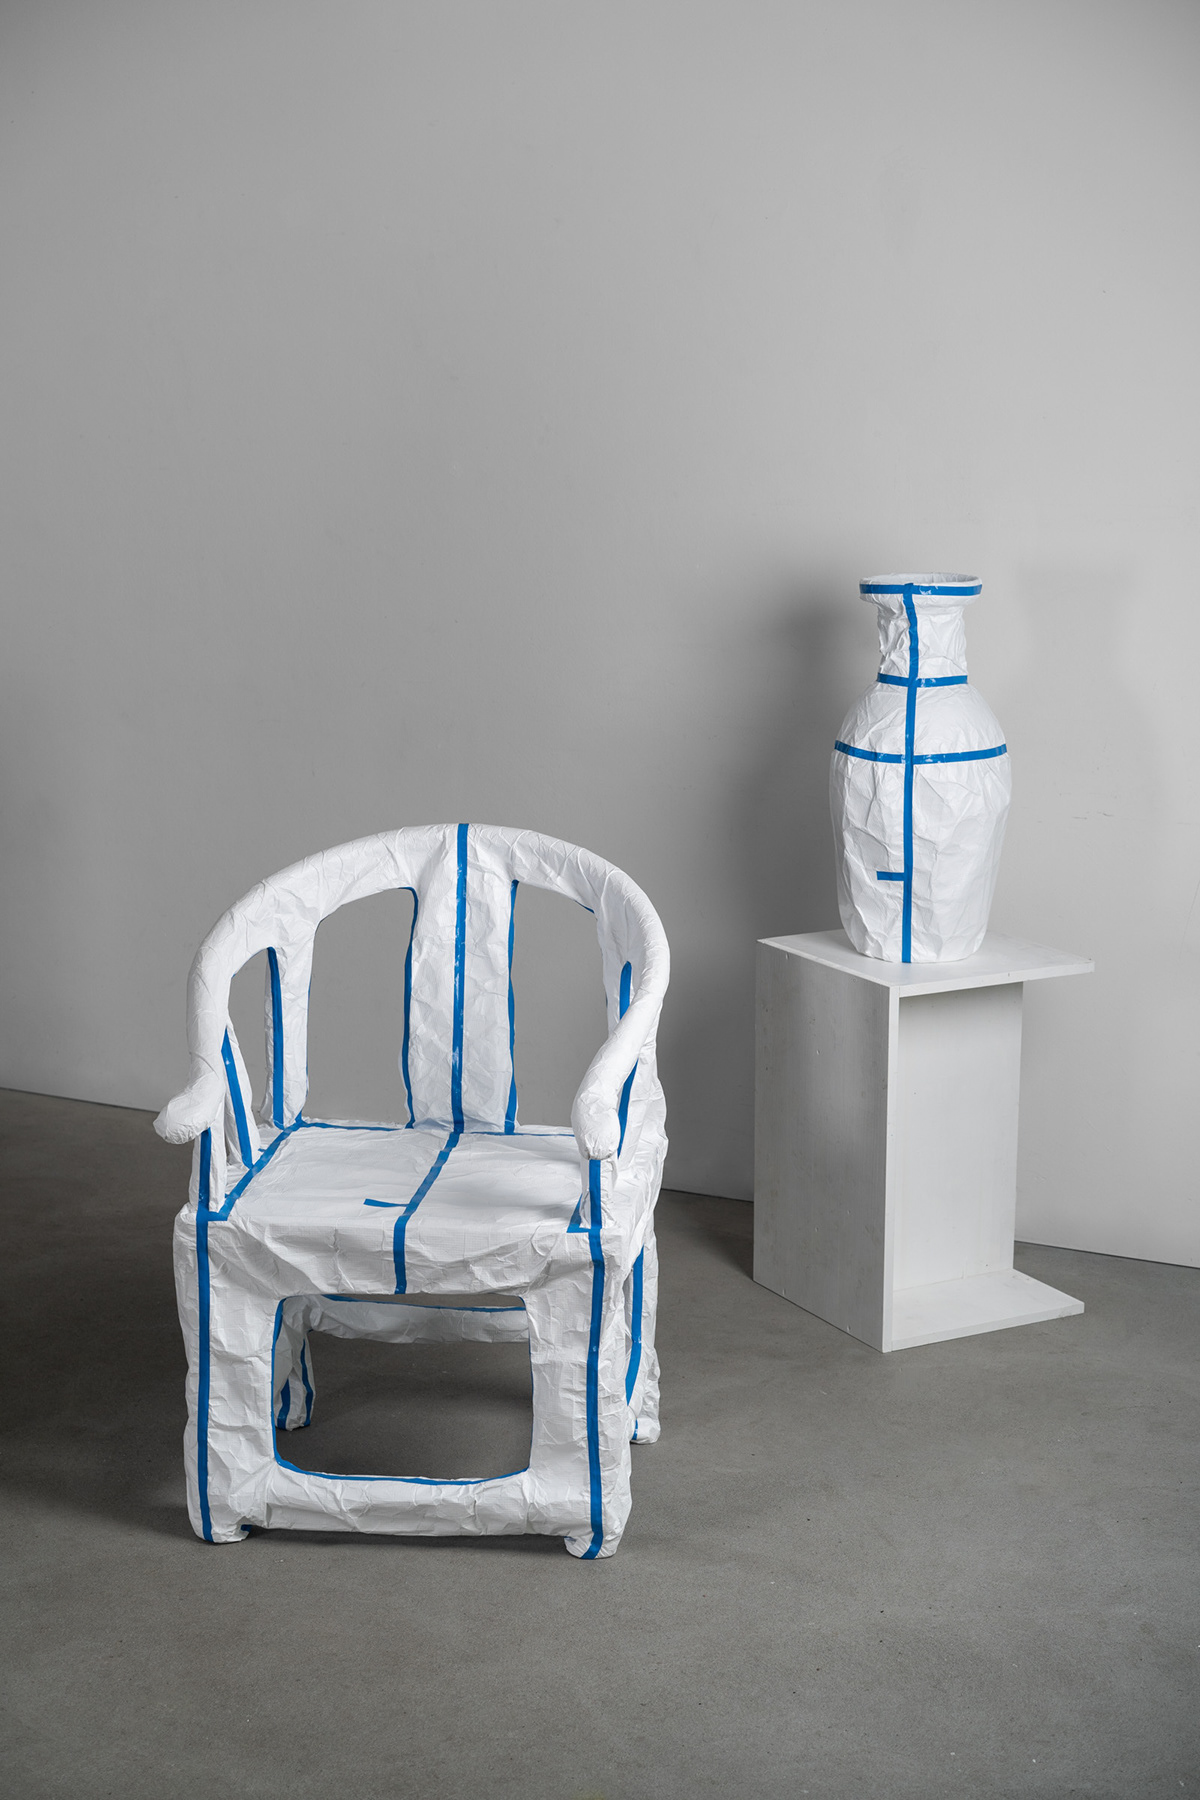 design as attitude design as commentary social design conceptual COVID-19 Critical Design furniture hazmat